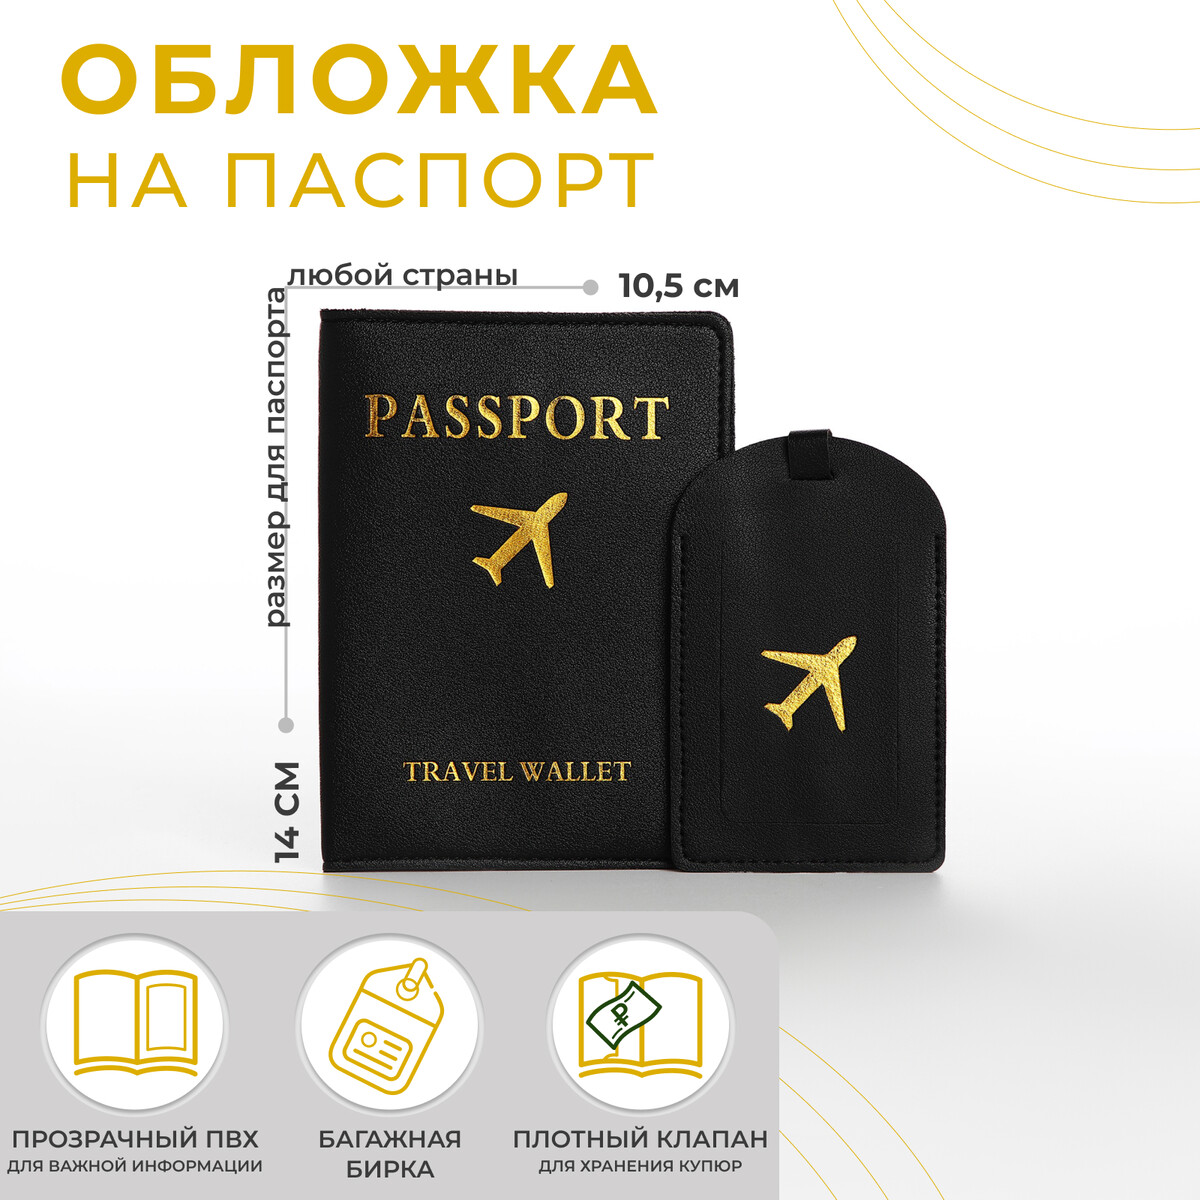 Обложка для паспорта, багажная бирка, цвет черный обложка для паспорта багажная бирка